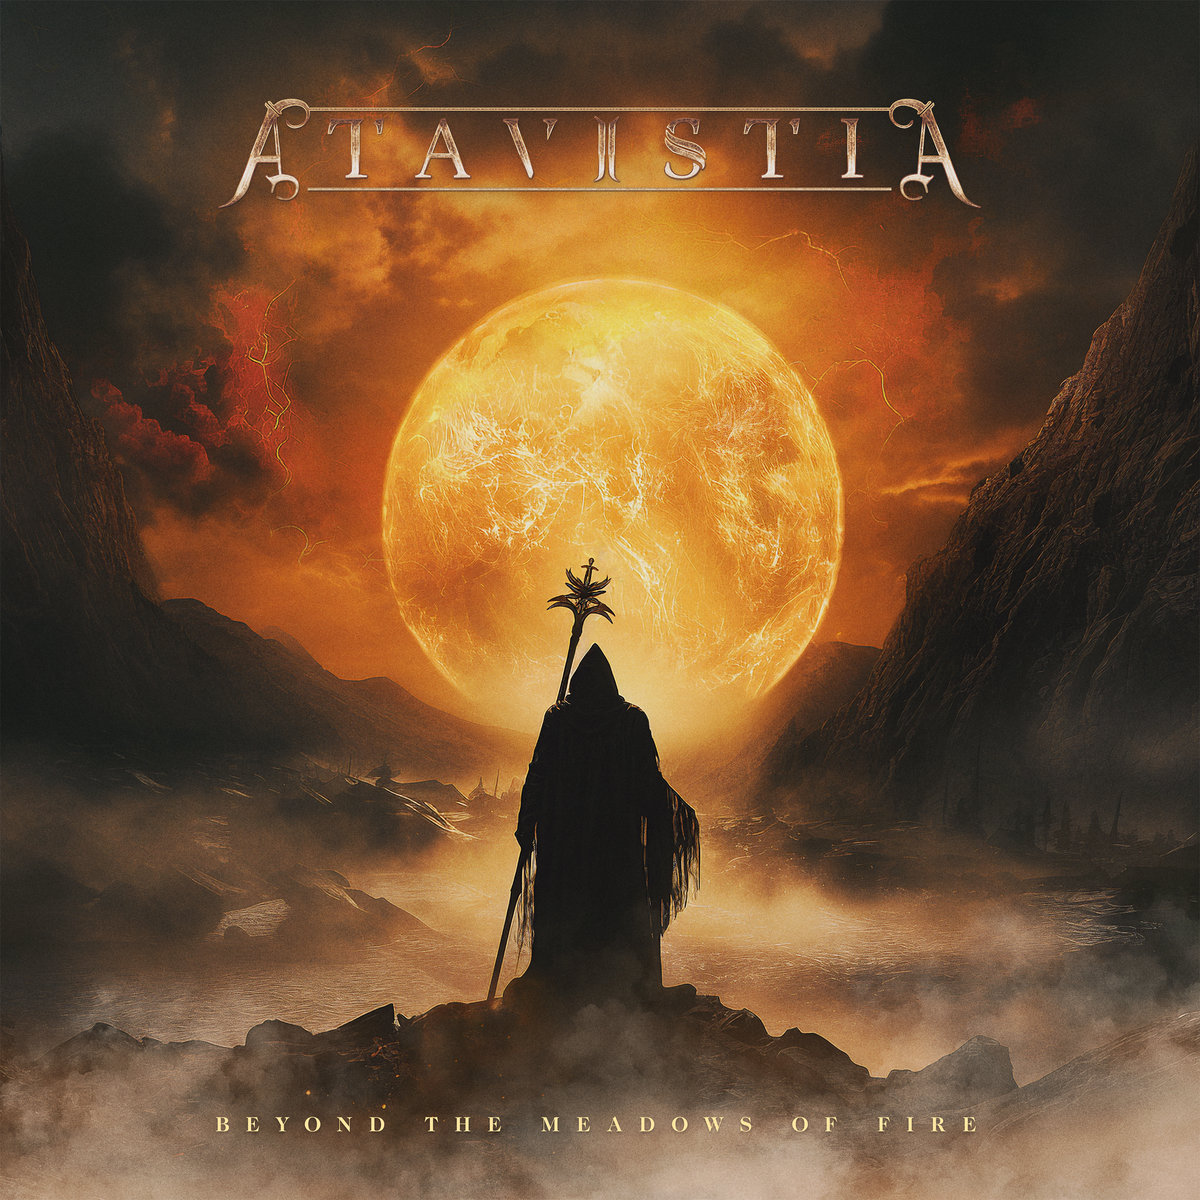 Atavistia — Beyond The Meadows Of Fire cover artwork